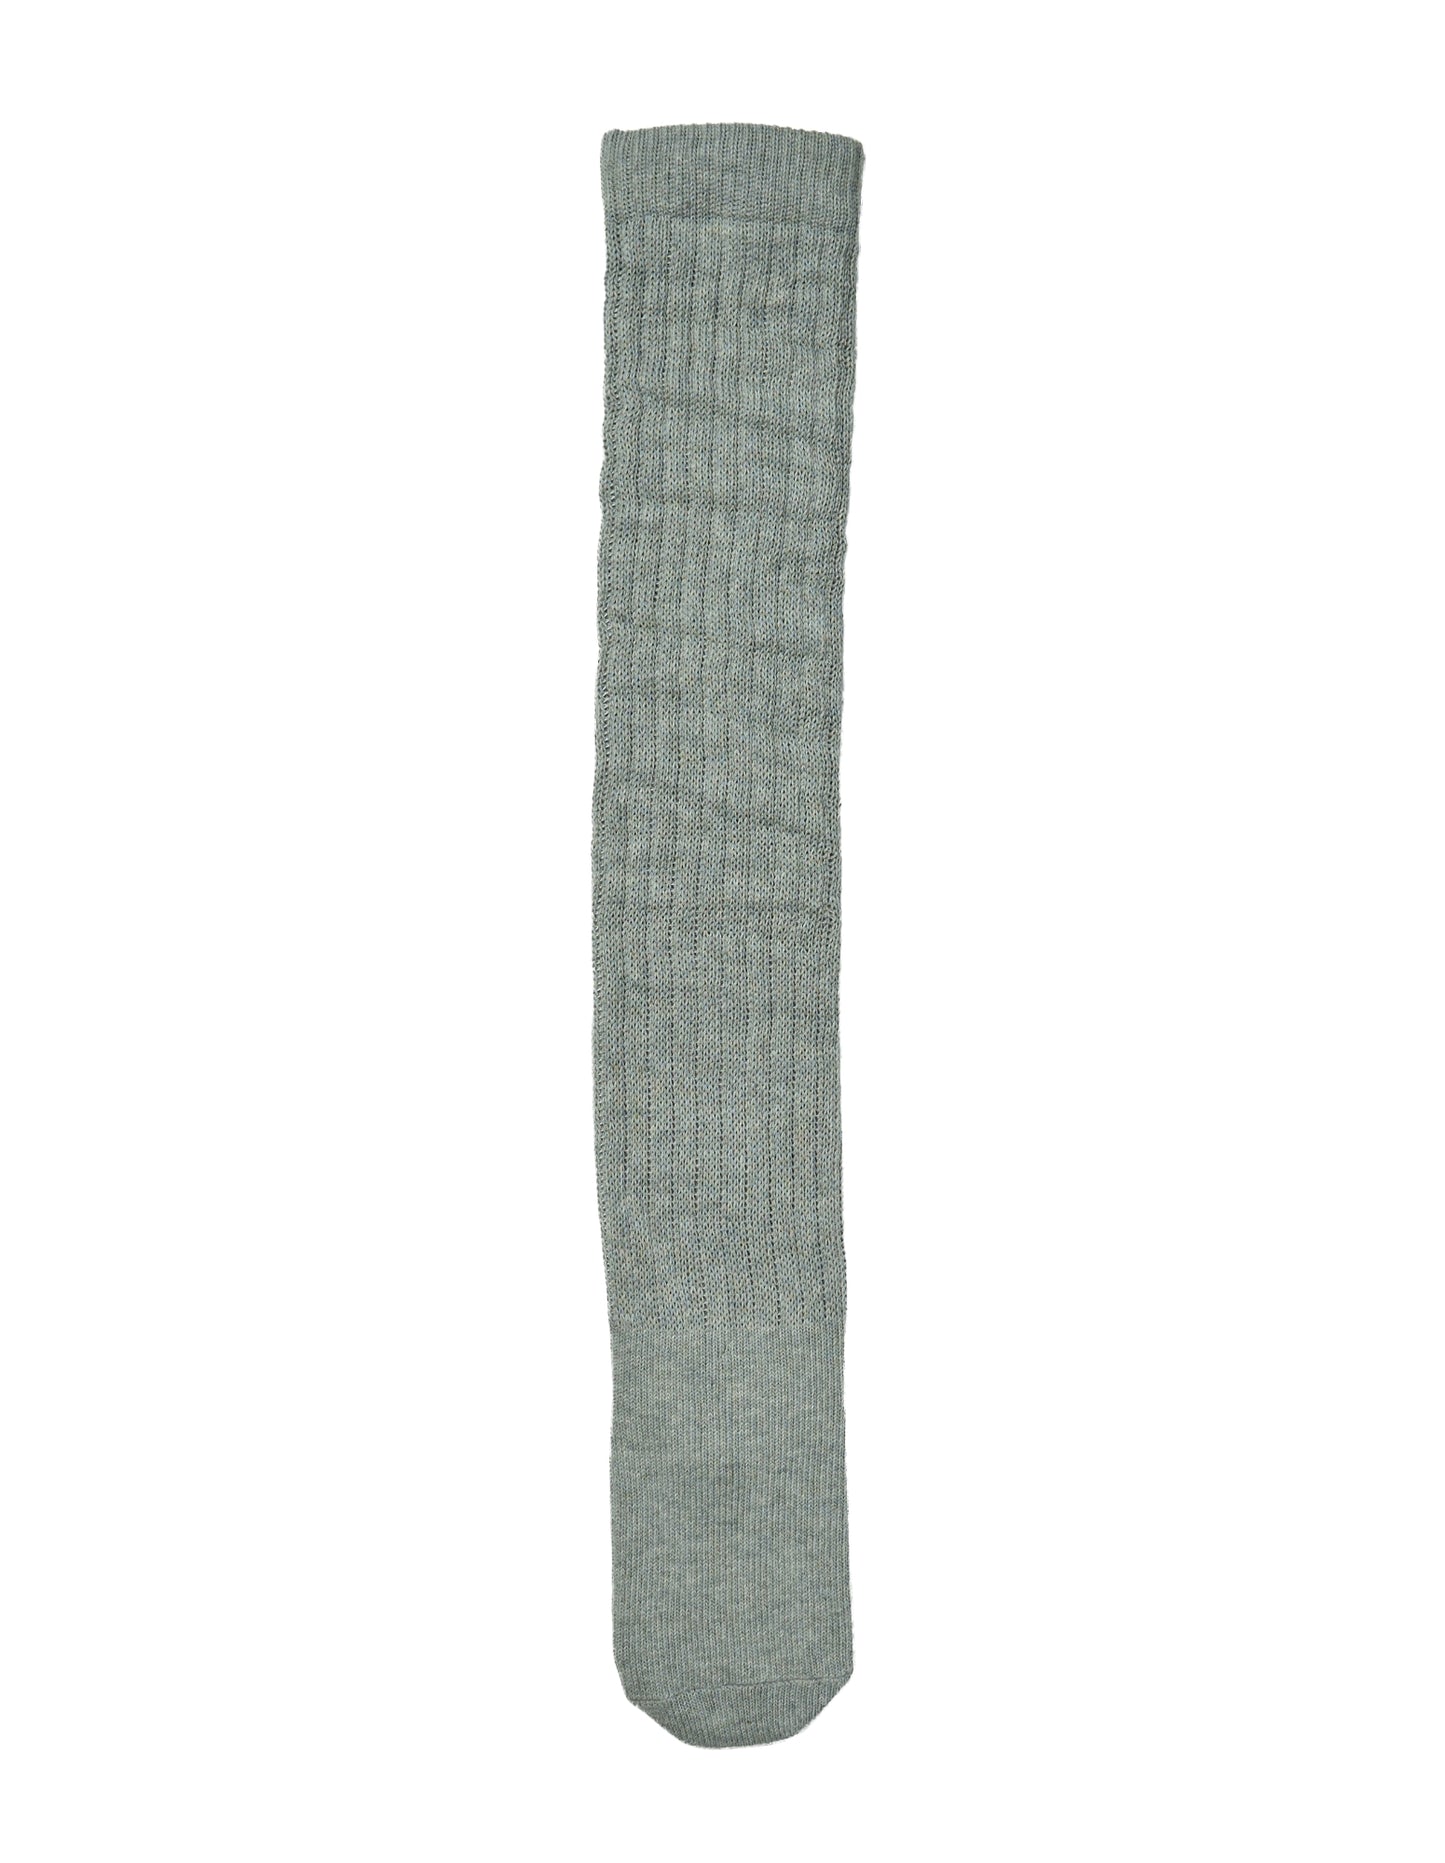 Full length of Simon de Winter Women's Slouch Socks in Grey Marle